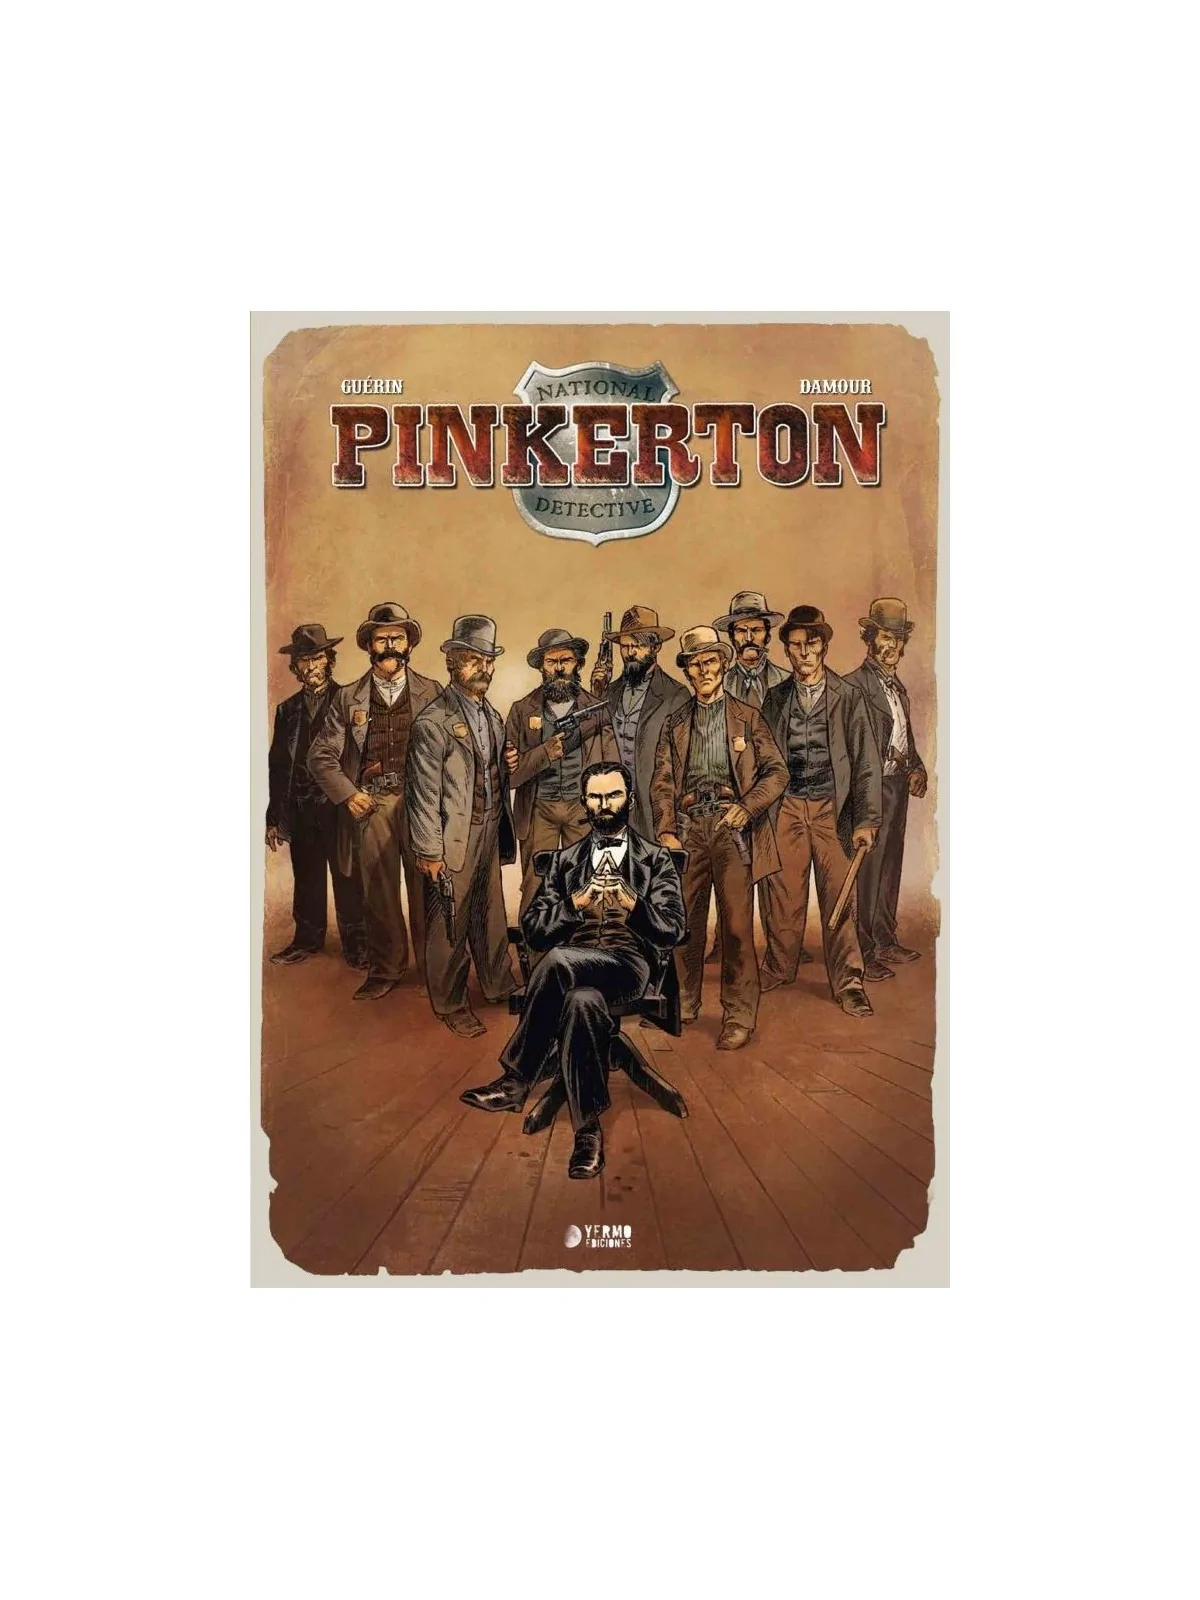 Comprar Pinkerton barato al mejor precio 38,00 € de Yermo Ediciones